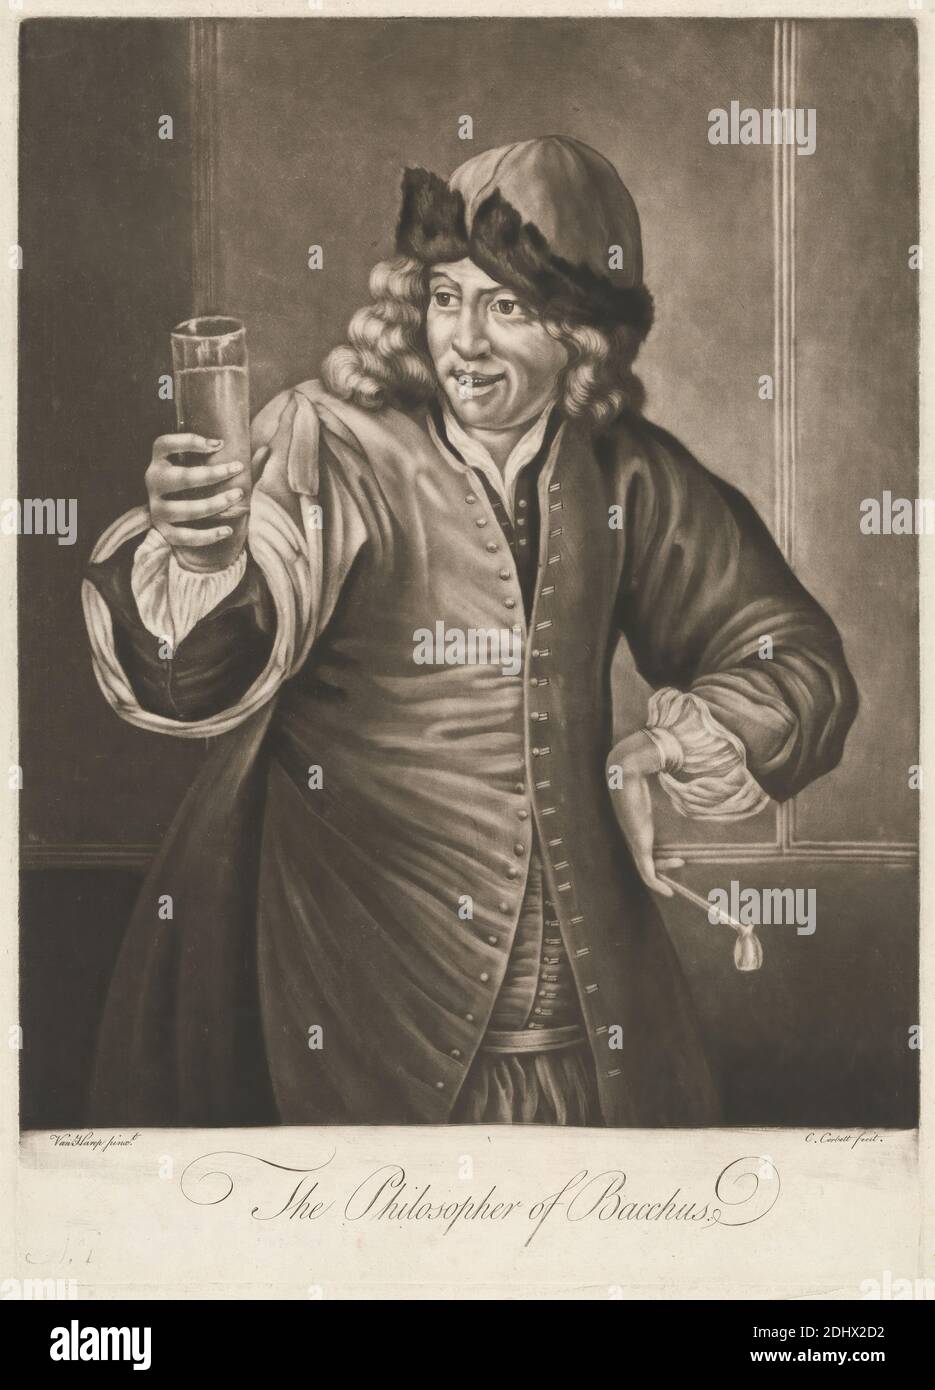 Il filosofo di Bacco, Stampa fatta da Richard Purcell, attivo 1746–1766, irlandese, dopo Willem van Herp i, 1614–1677, fiammingo, non satinato, Mezzotint su carta di spessore moderato, leggermente testurizzata, crema, foglio: 15 5/8 × 11 3/16 pollici (39.7 × 28.4 cm), Plexiglas: 24 1/16 × 10 pollici (61.1 × 25.4 cm) e immagine: 12 5/16 × 10 pollici (31.3 × 25.4 cm Foto Stock